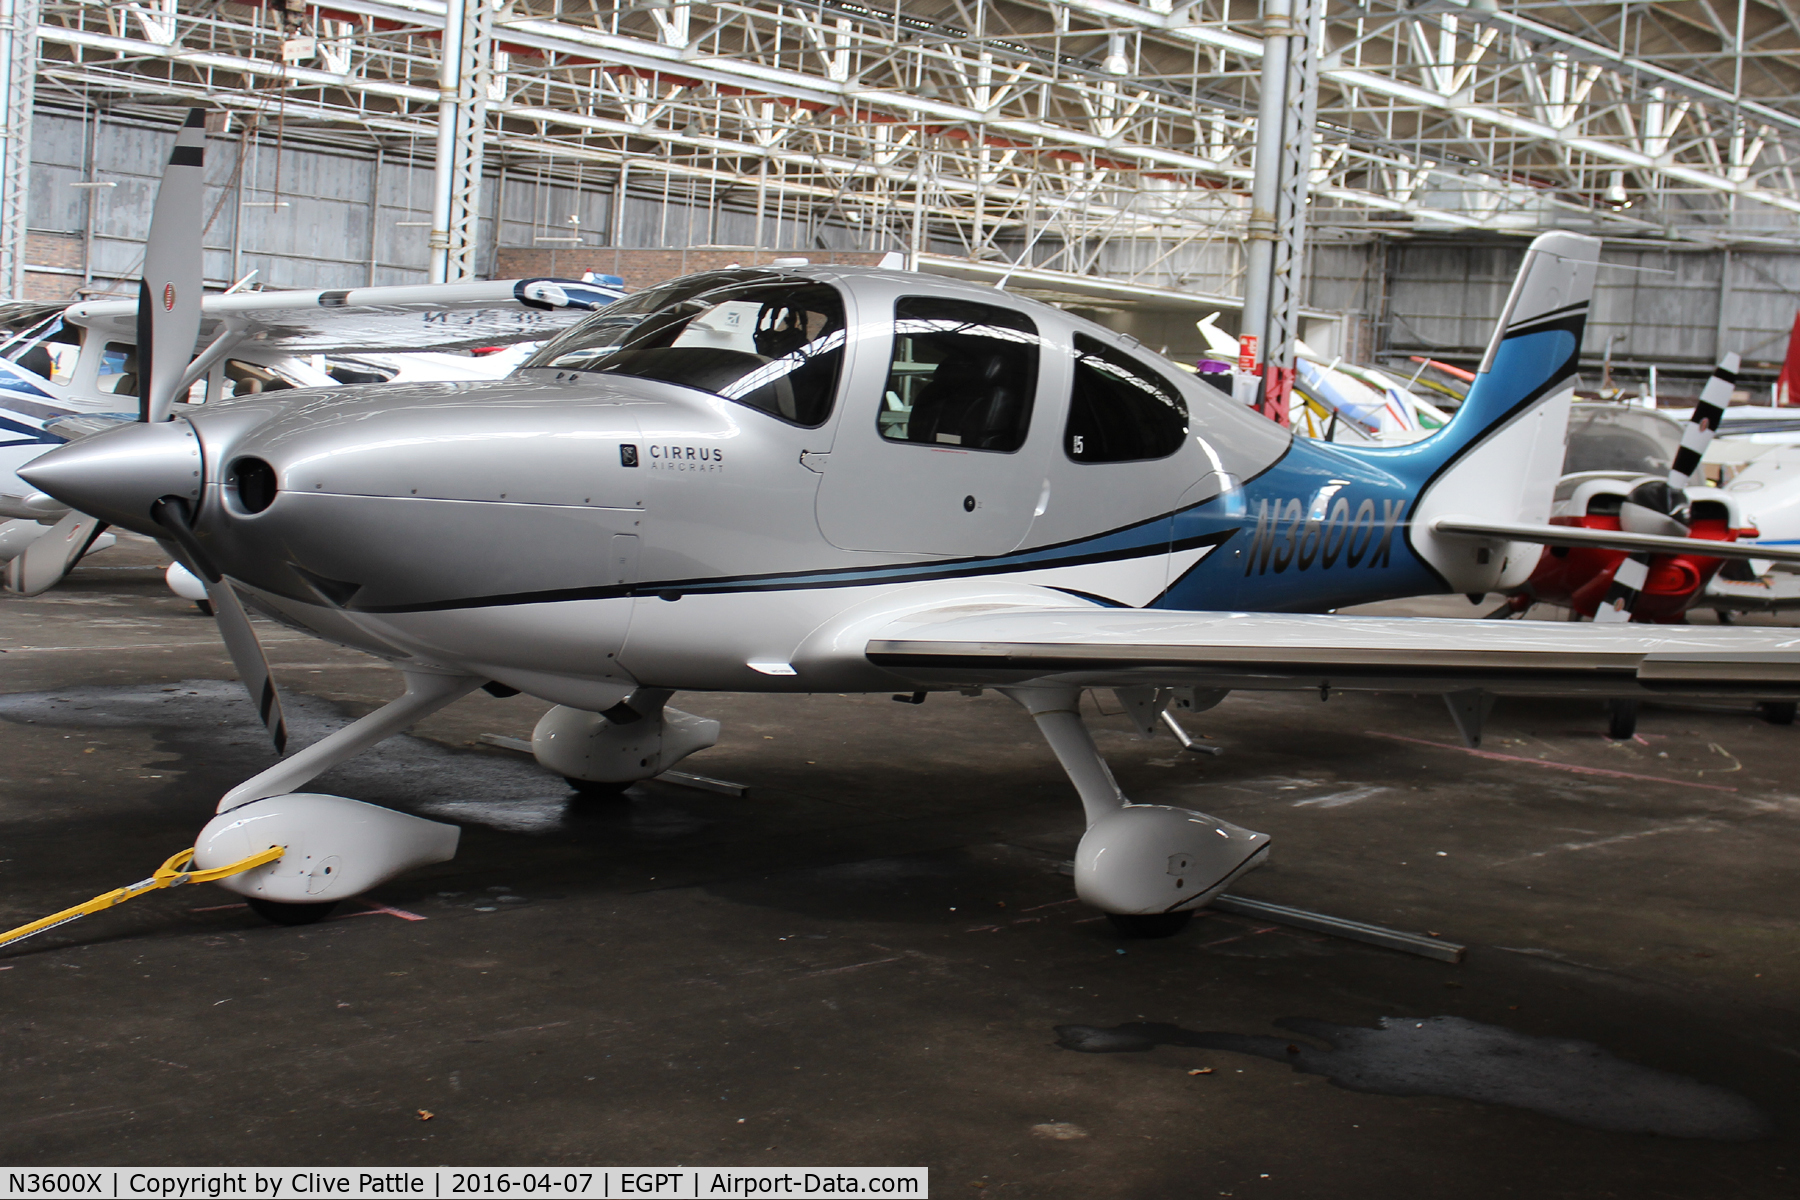 N3600X, 2013 Cirrus SR22T C/N 0491, Hangared at Perth EGPT